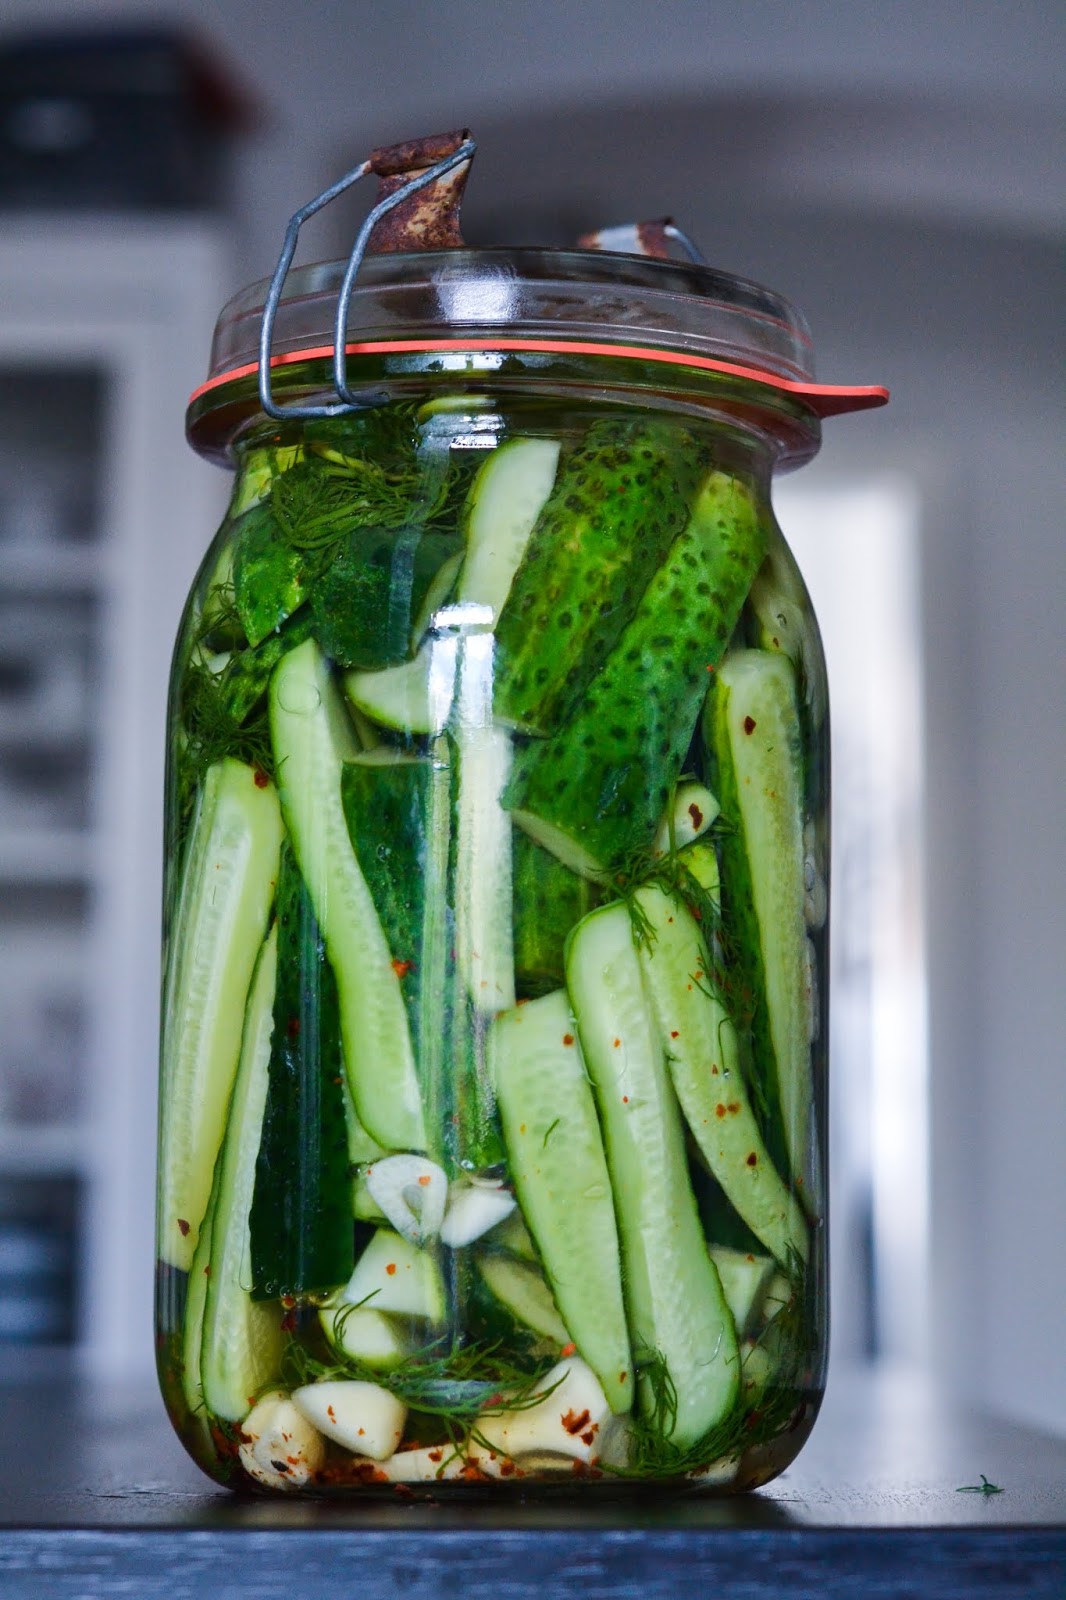 Christina macht was: Fridge Pickles / Eingelegte Gurken aus dem Kühlschrank